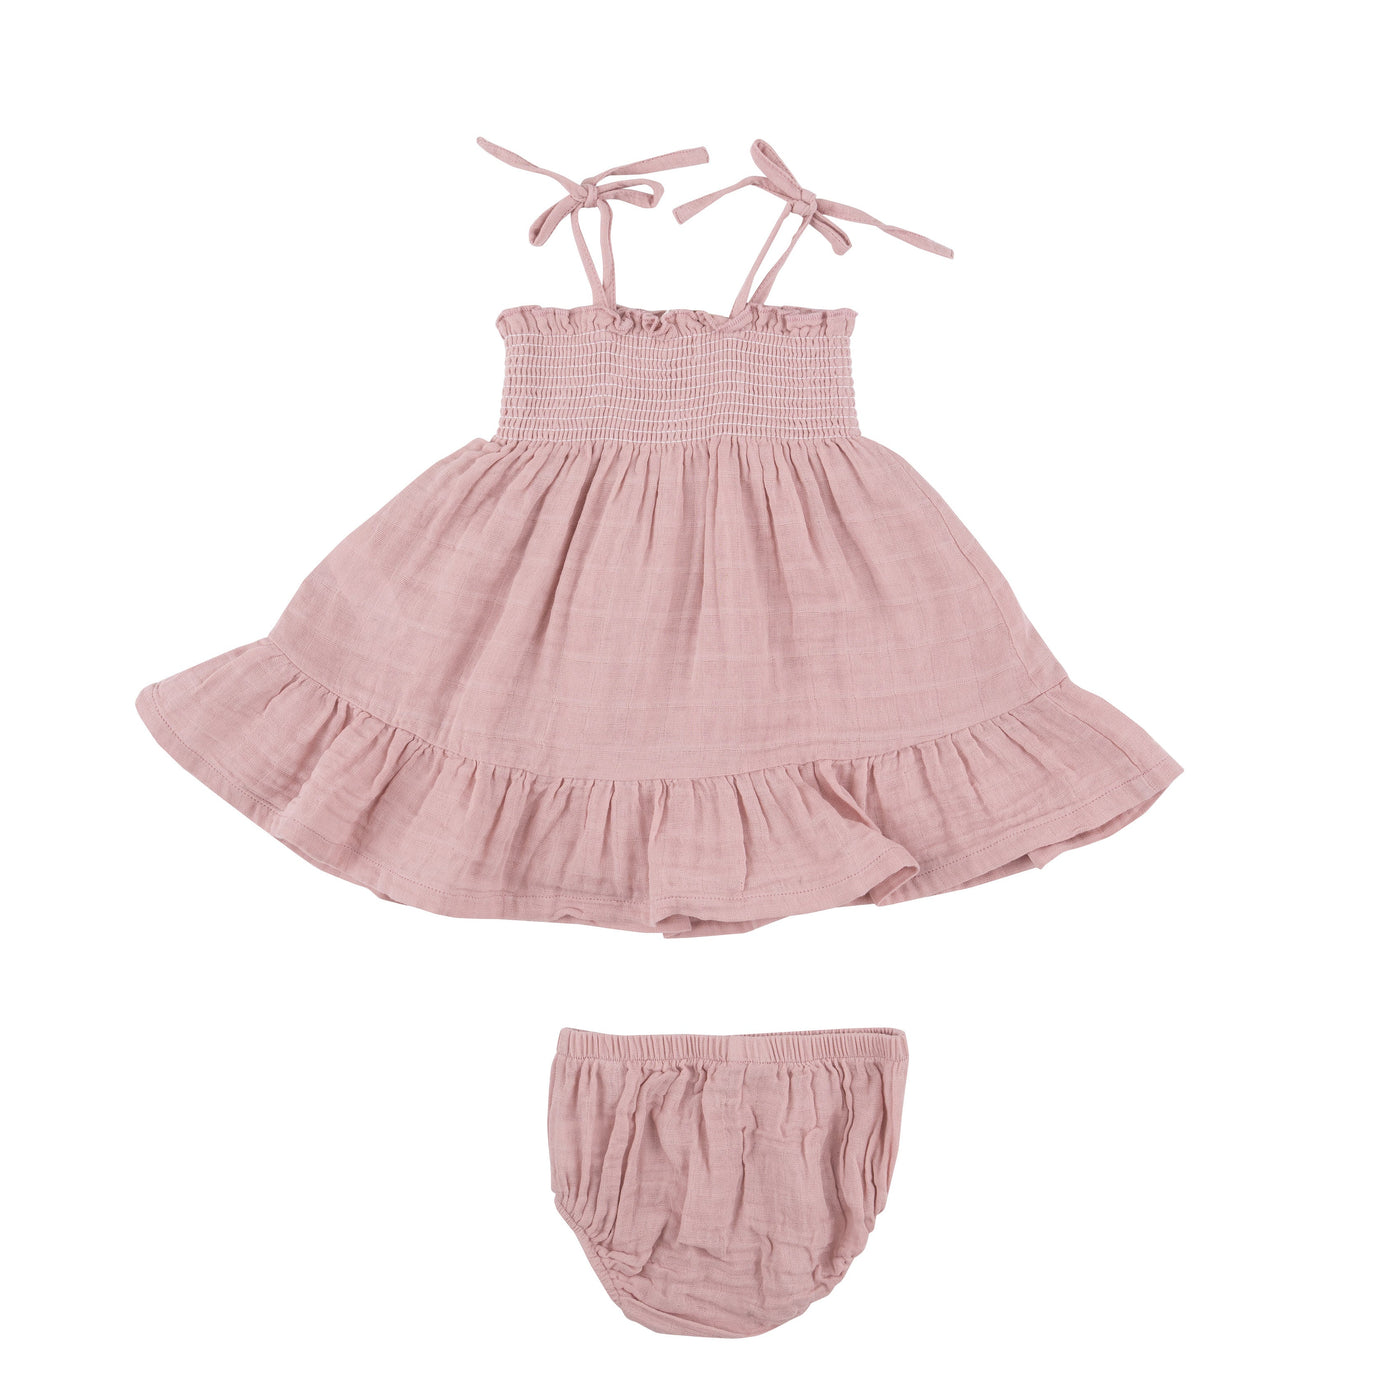 Tie Strap Smocked Sun Dresss Diaper Cover - Dusty Pink Solid Muslin - Angel Dear